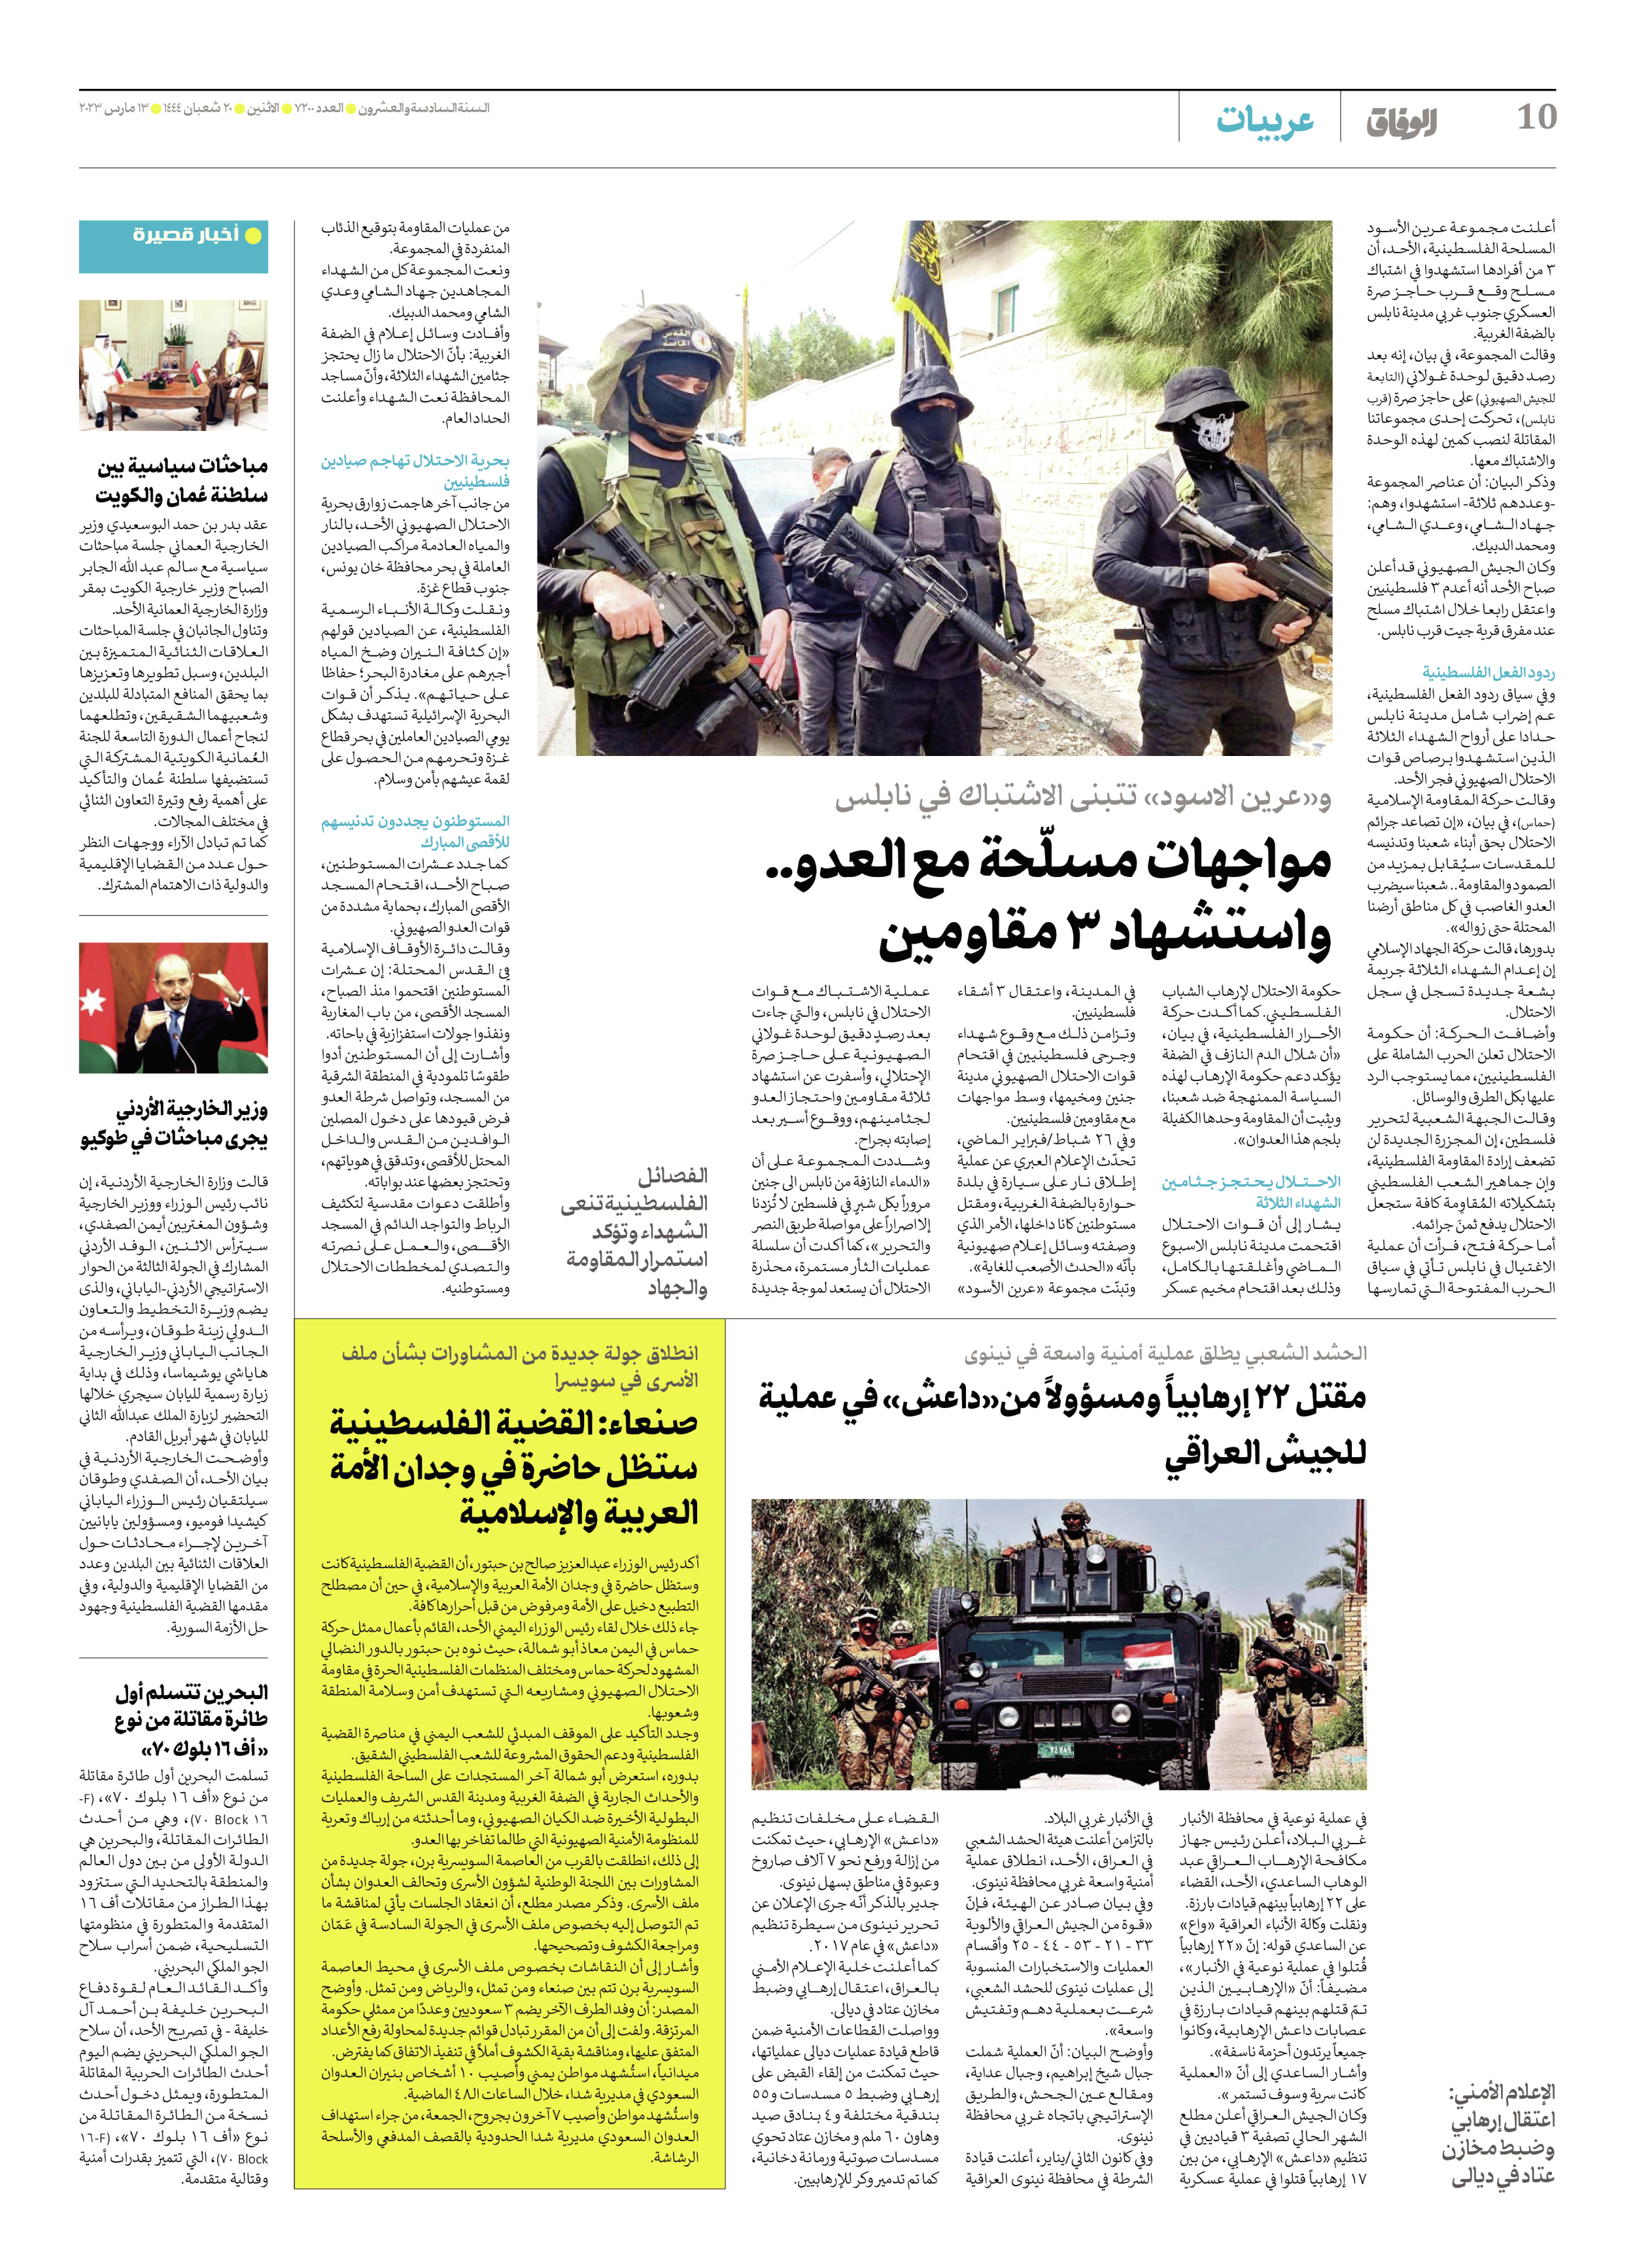 صحیفة ایران الدولیة الوفاق - العدد سبعة آلاف ومائتان - ١٣ مارس ٢٠٢٣ - الصفحة ۱۰